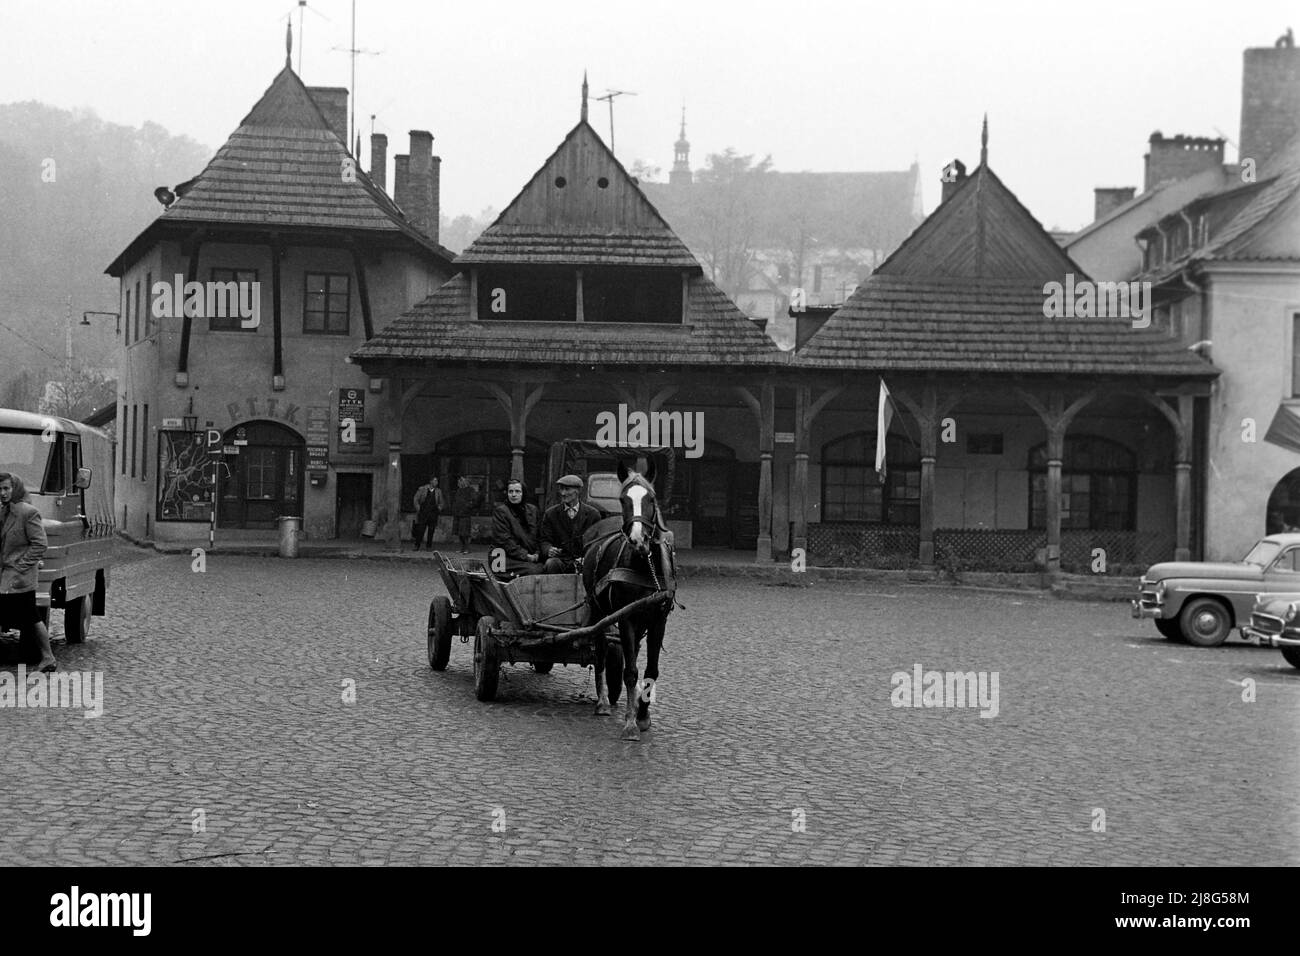 Pferdekarren auf dem Marktplatz von Kazimierz Dolny, Woiwodschaft Lublin, 1967. Horse-drawn cart on Kazimierz Dolny market square, Lublin Vovoideship, 1967. Stock Photo